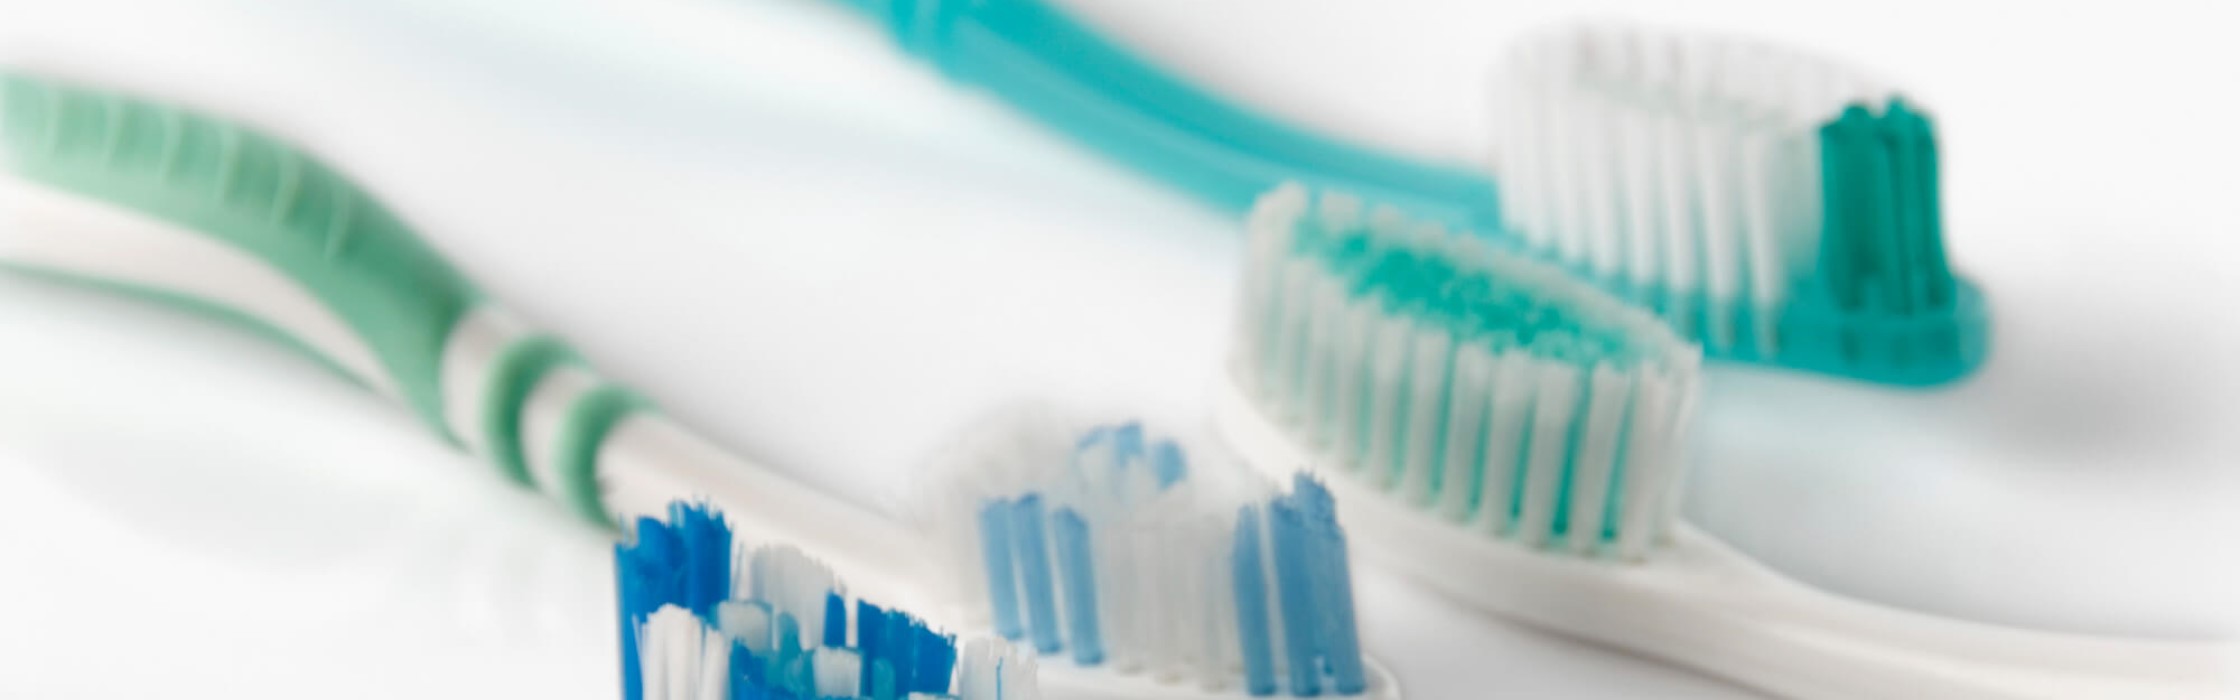 Welche Zahnbürste empfehlen Zahnärzte?